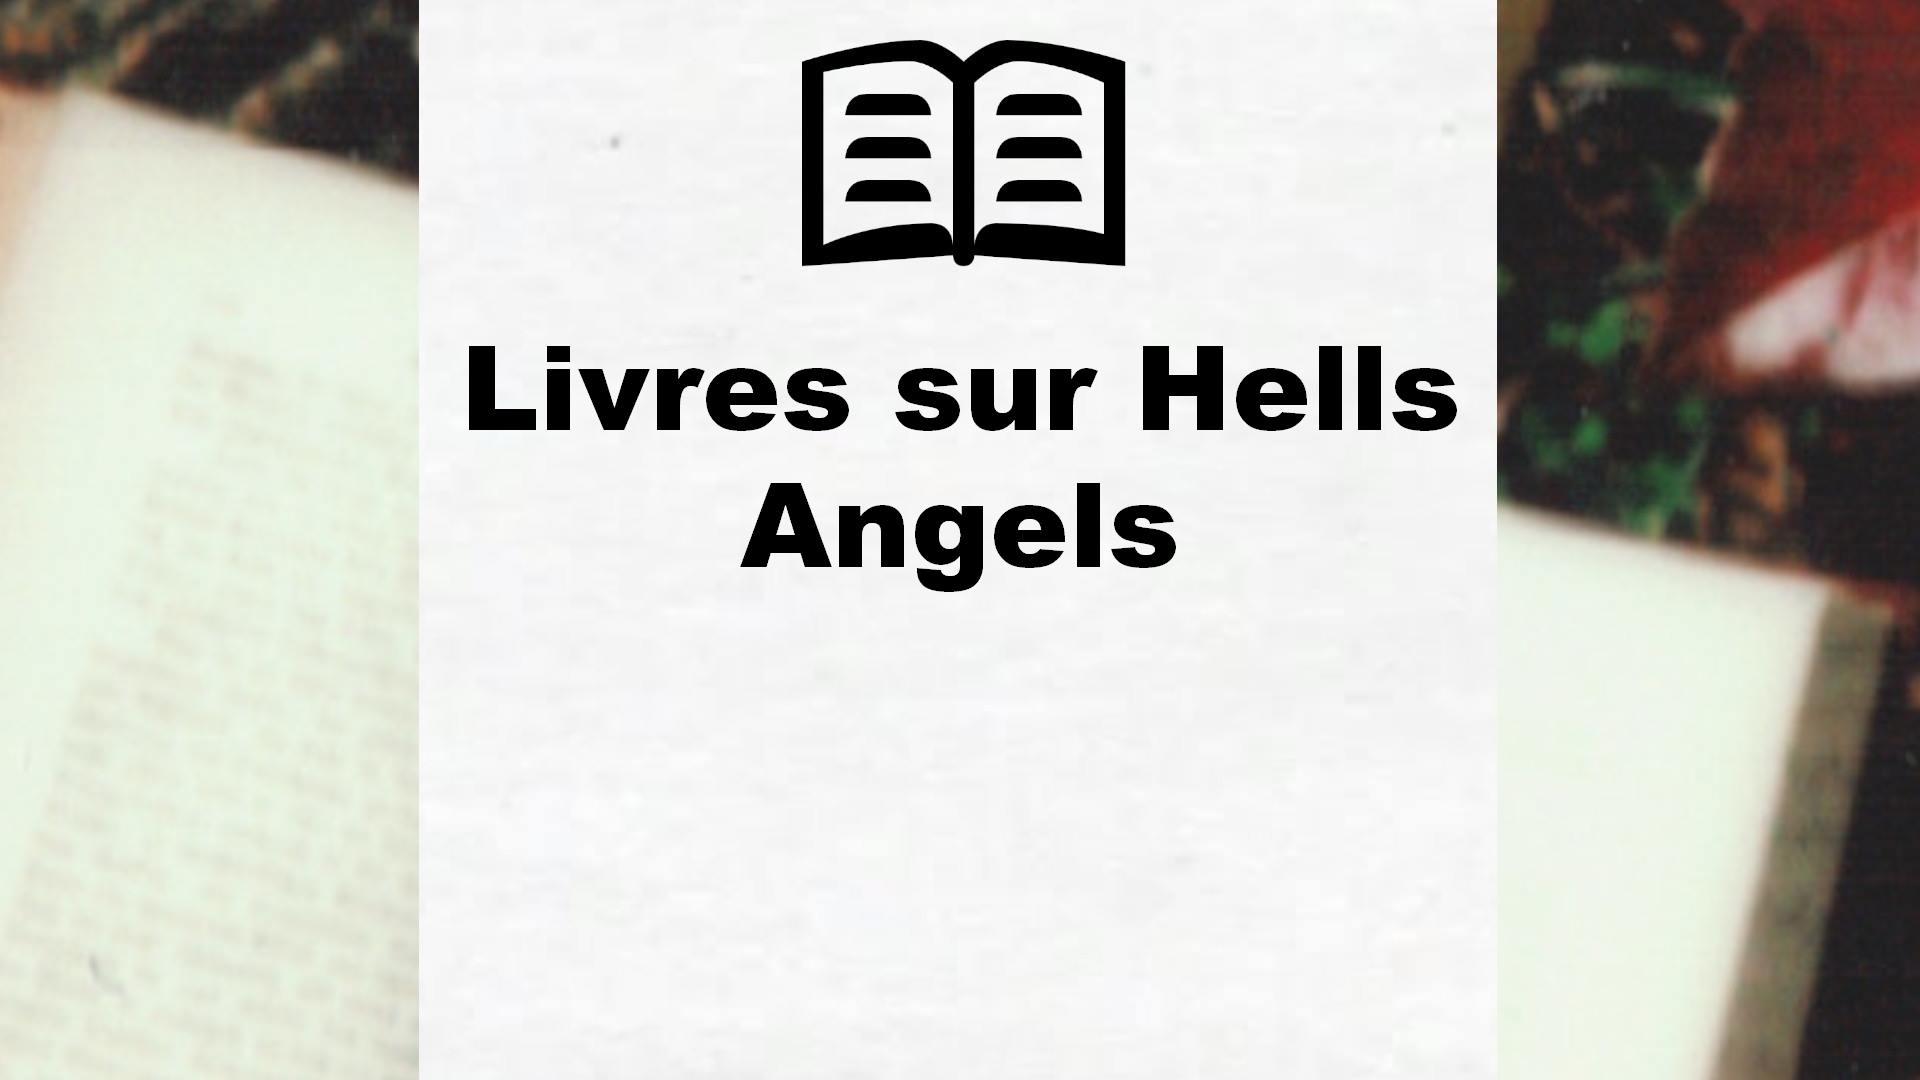 Livres sur Hells Angels